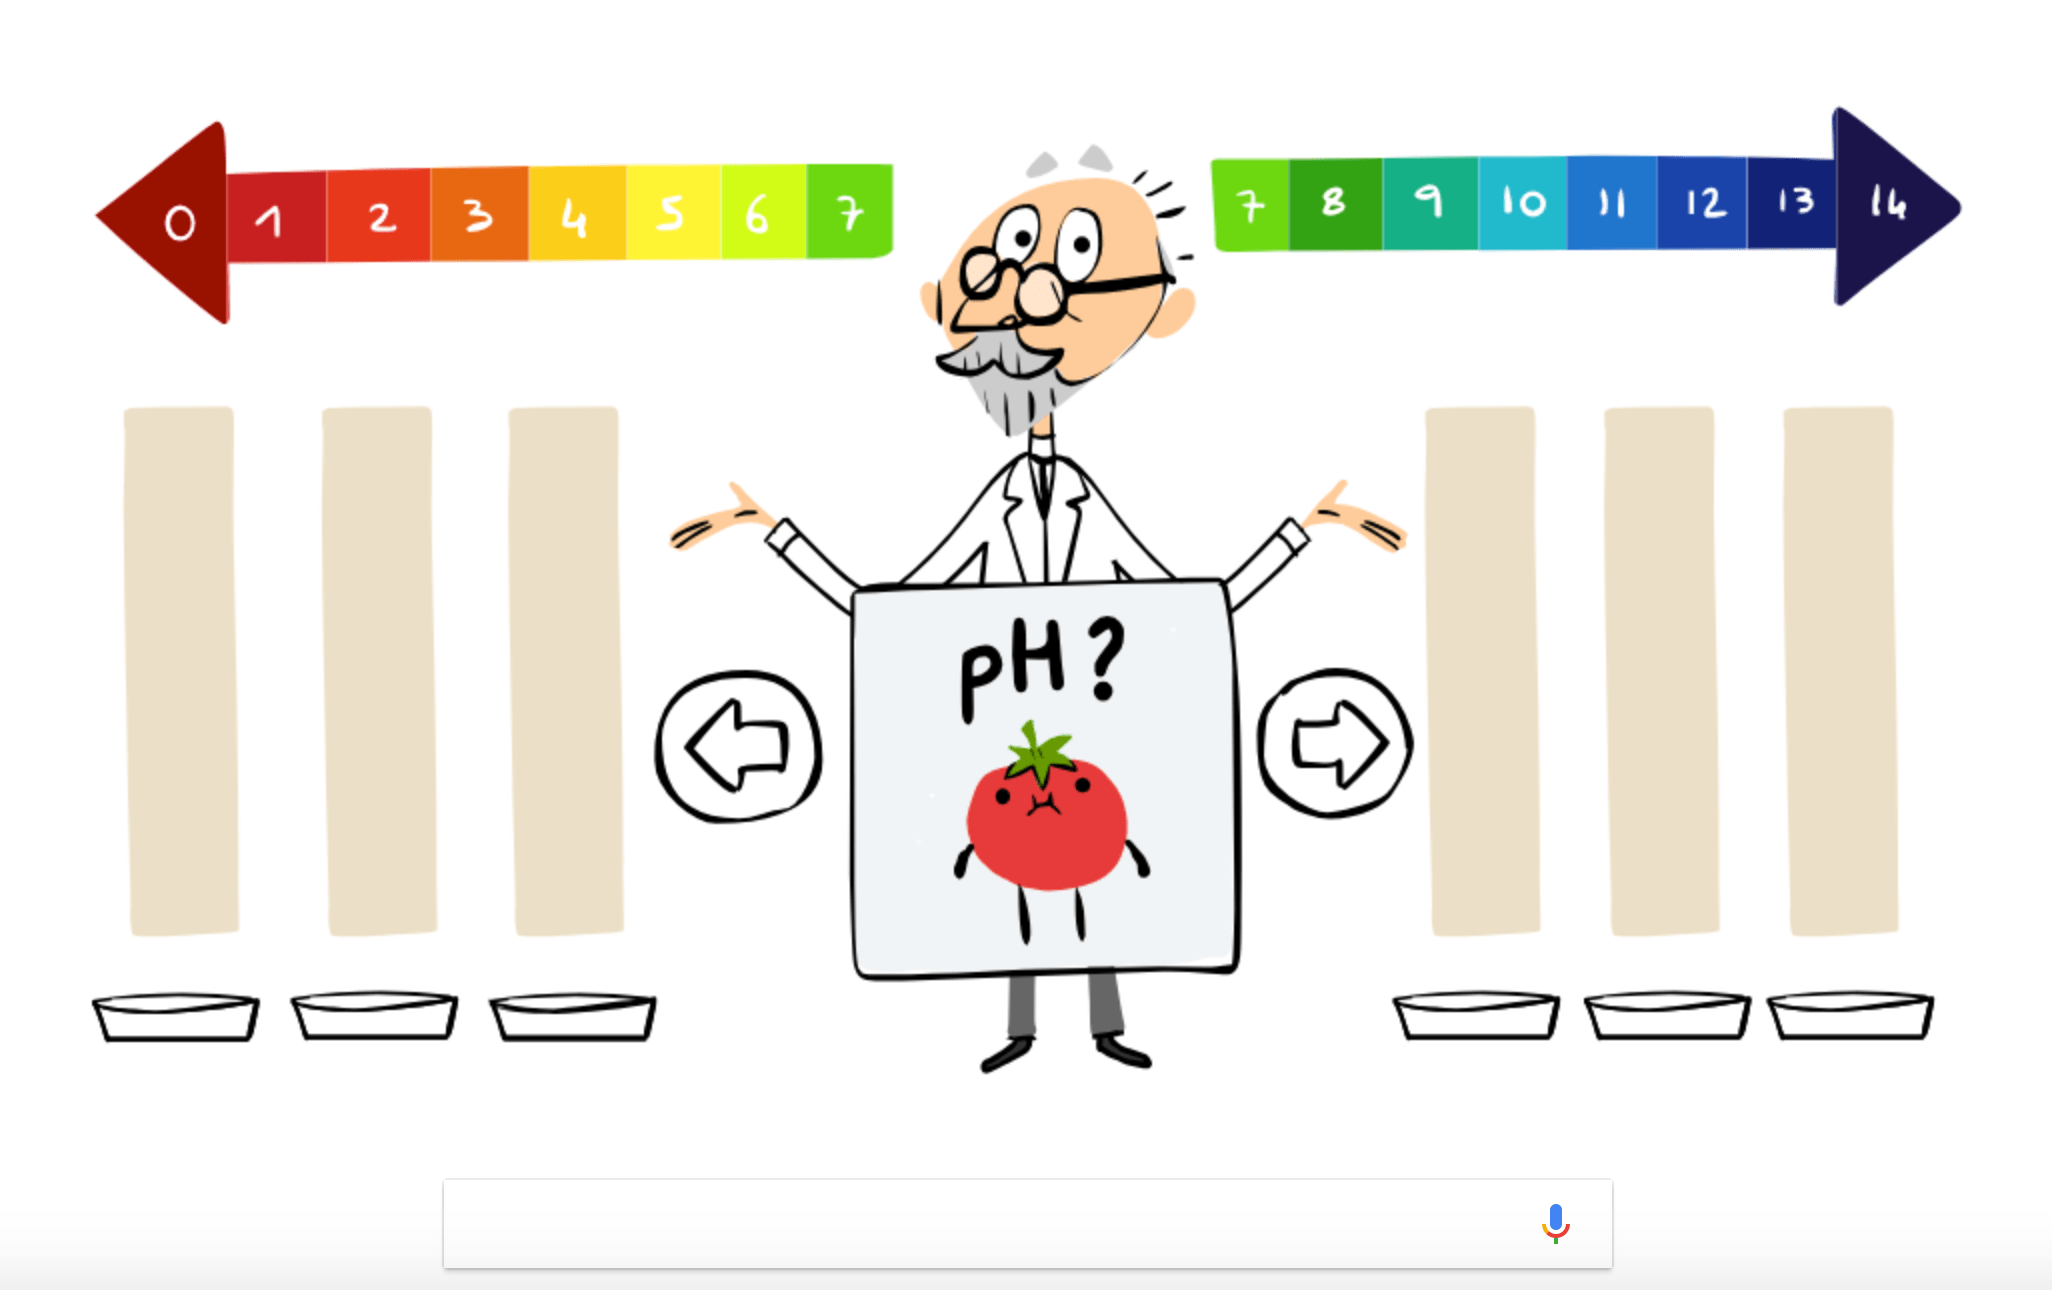 Google Doodle-Spiele: Testen Sie Ihr Wissen über die pH-Skala mit diesem interaktiven Doodle über S.P.L Sørensen